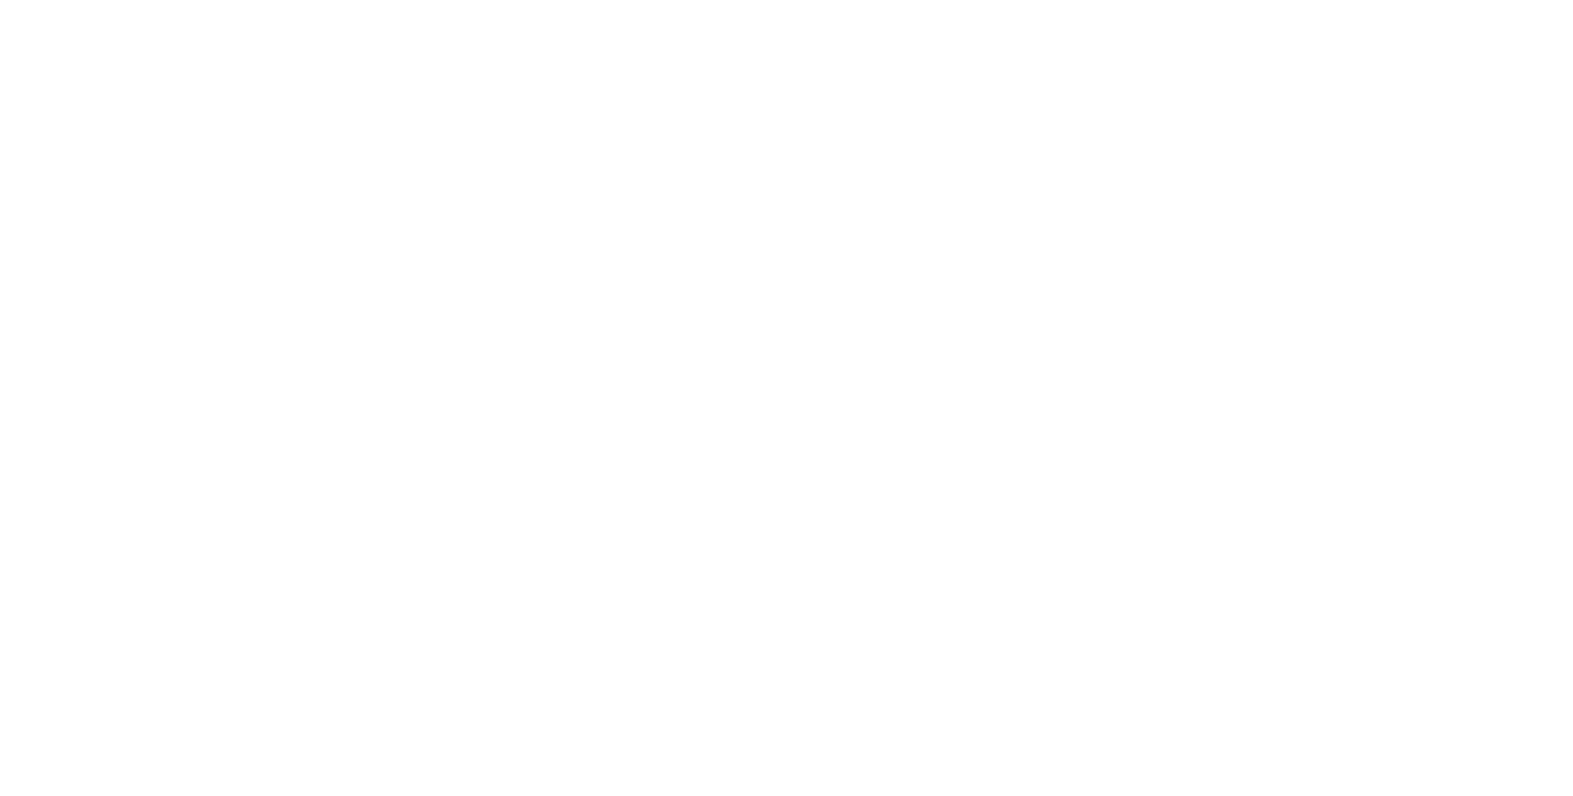 Partner Communications logo large for dark backgrounds (transparent PNG)